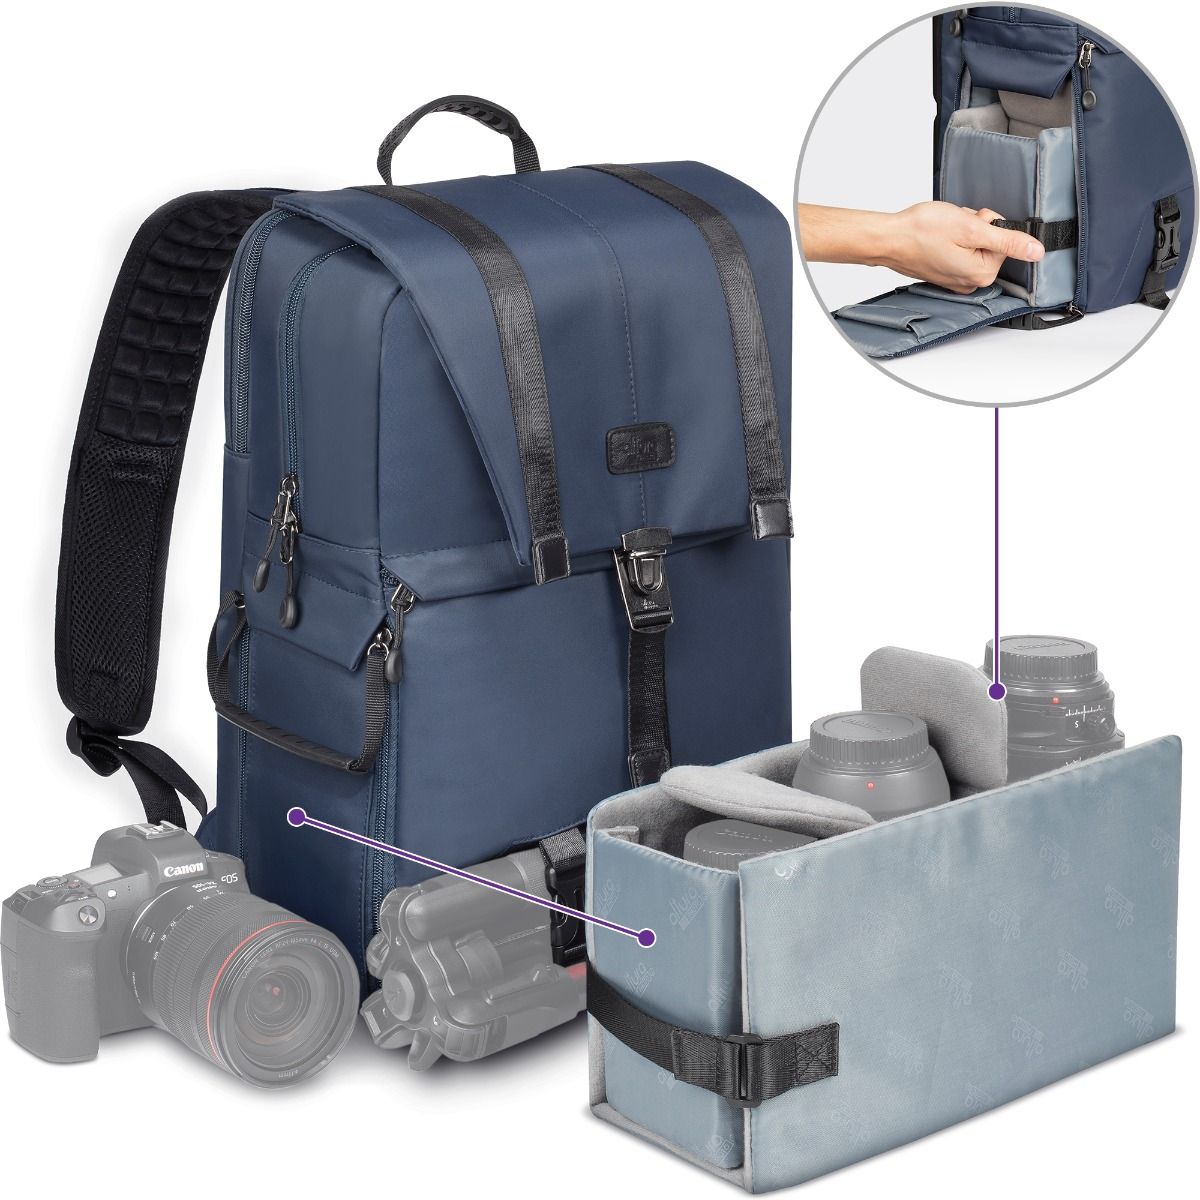 Peso del equipaje fotografías e imágenes de alta resolución - Alamy